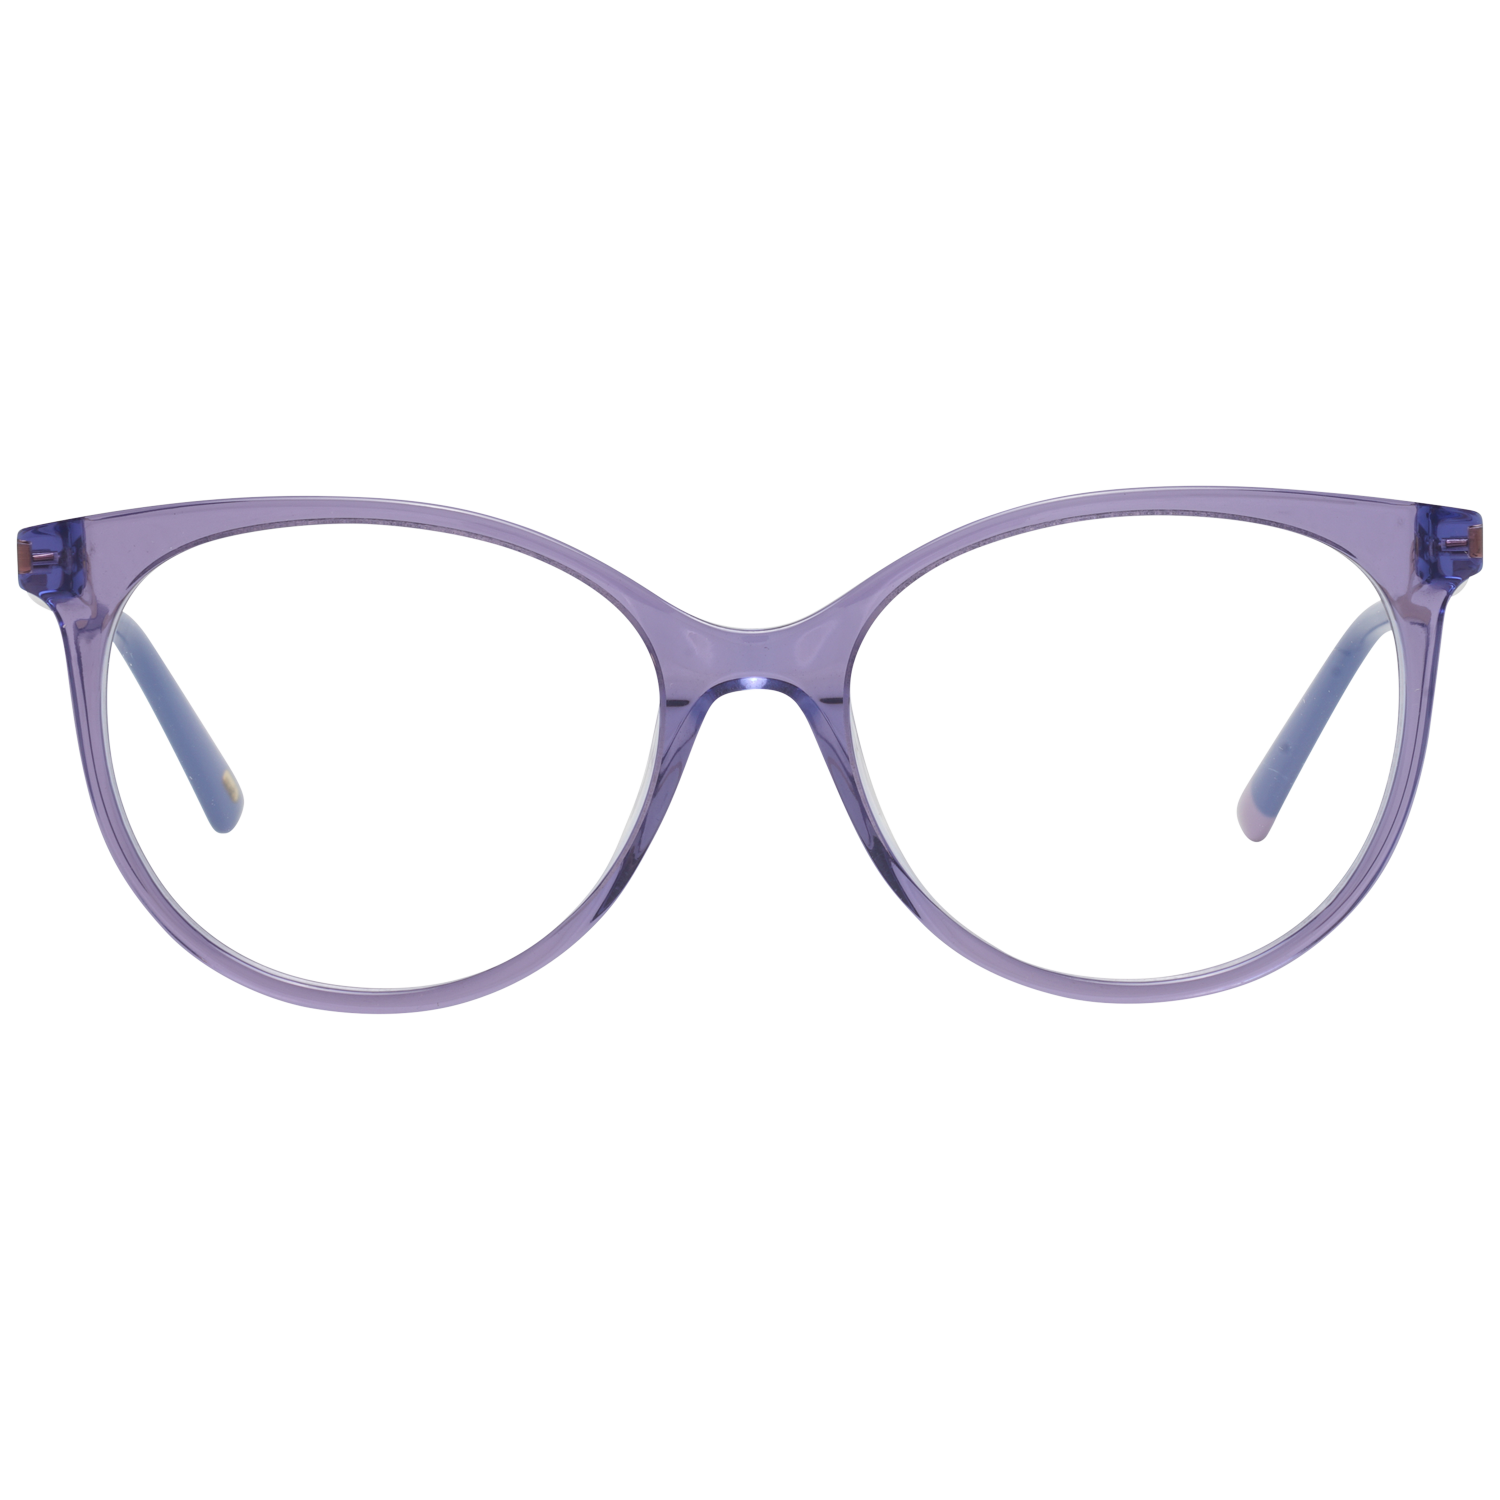 Web Frames Web Optical Frame WE5238 080 52 Eyeglasses Eyewear UK USA Australia 